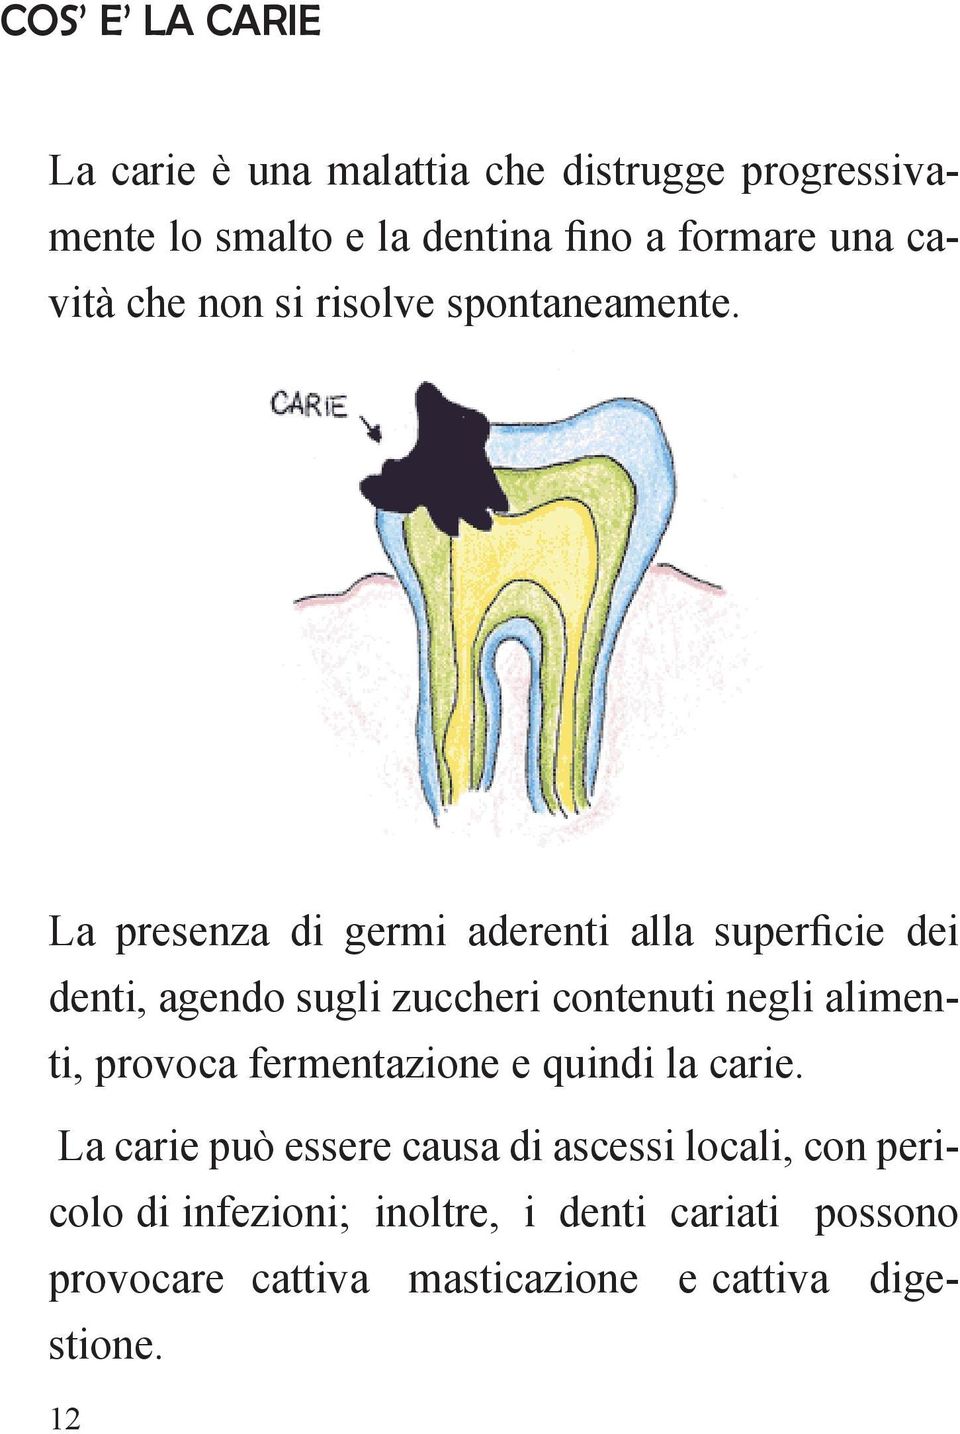 La presenza di germi aderenti alla superficie dei denti, agendo sugli zuccheri contenuti negli alimenti, provoca